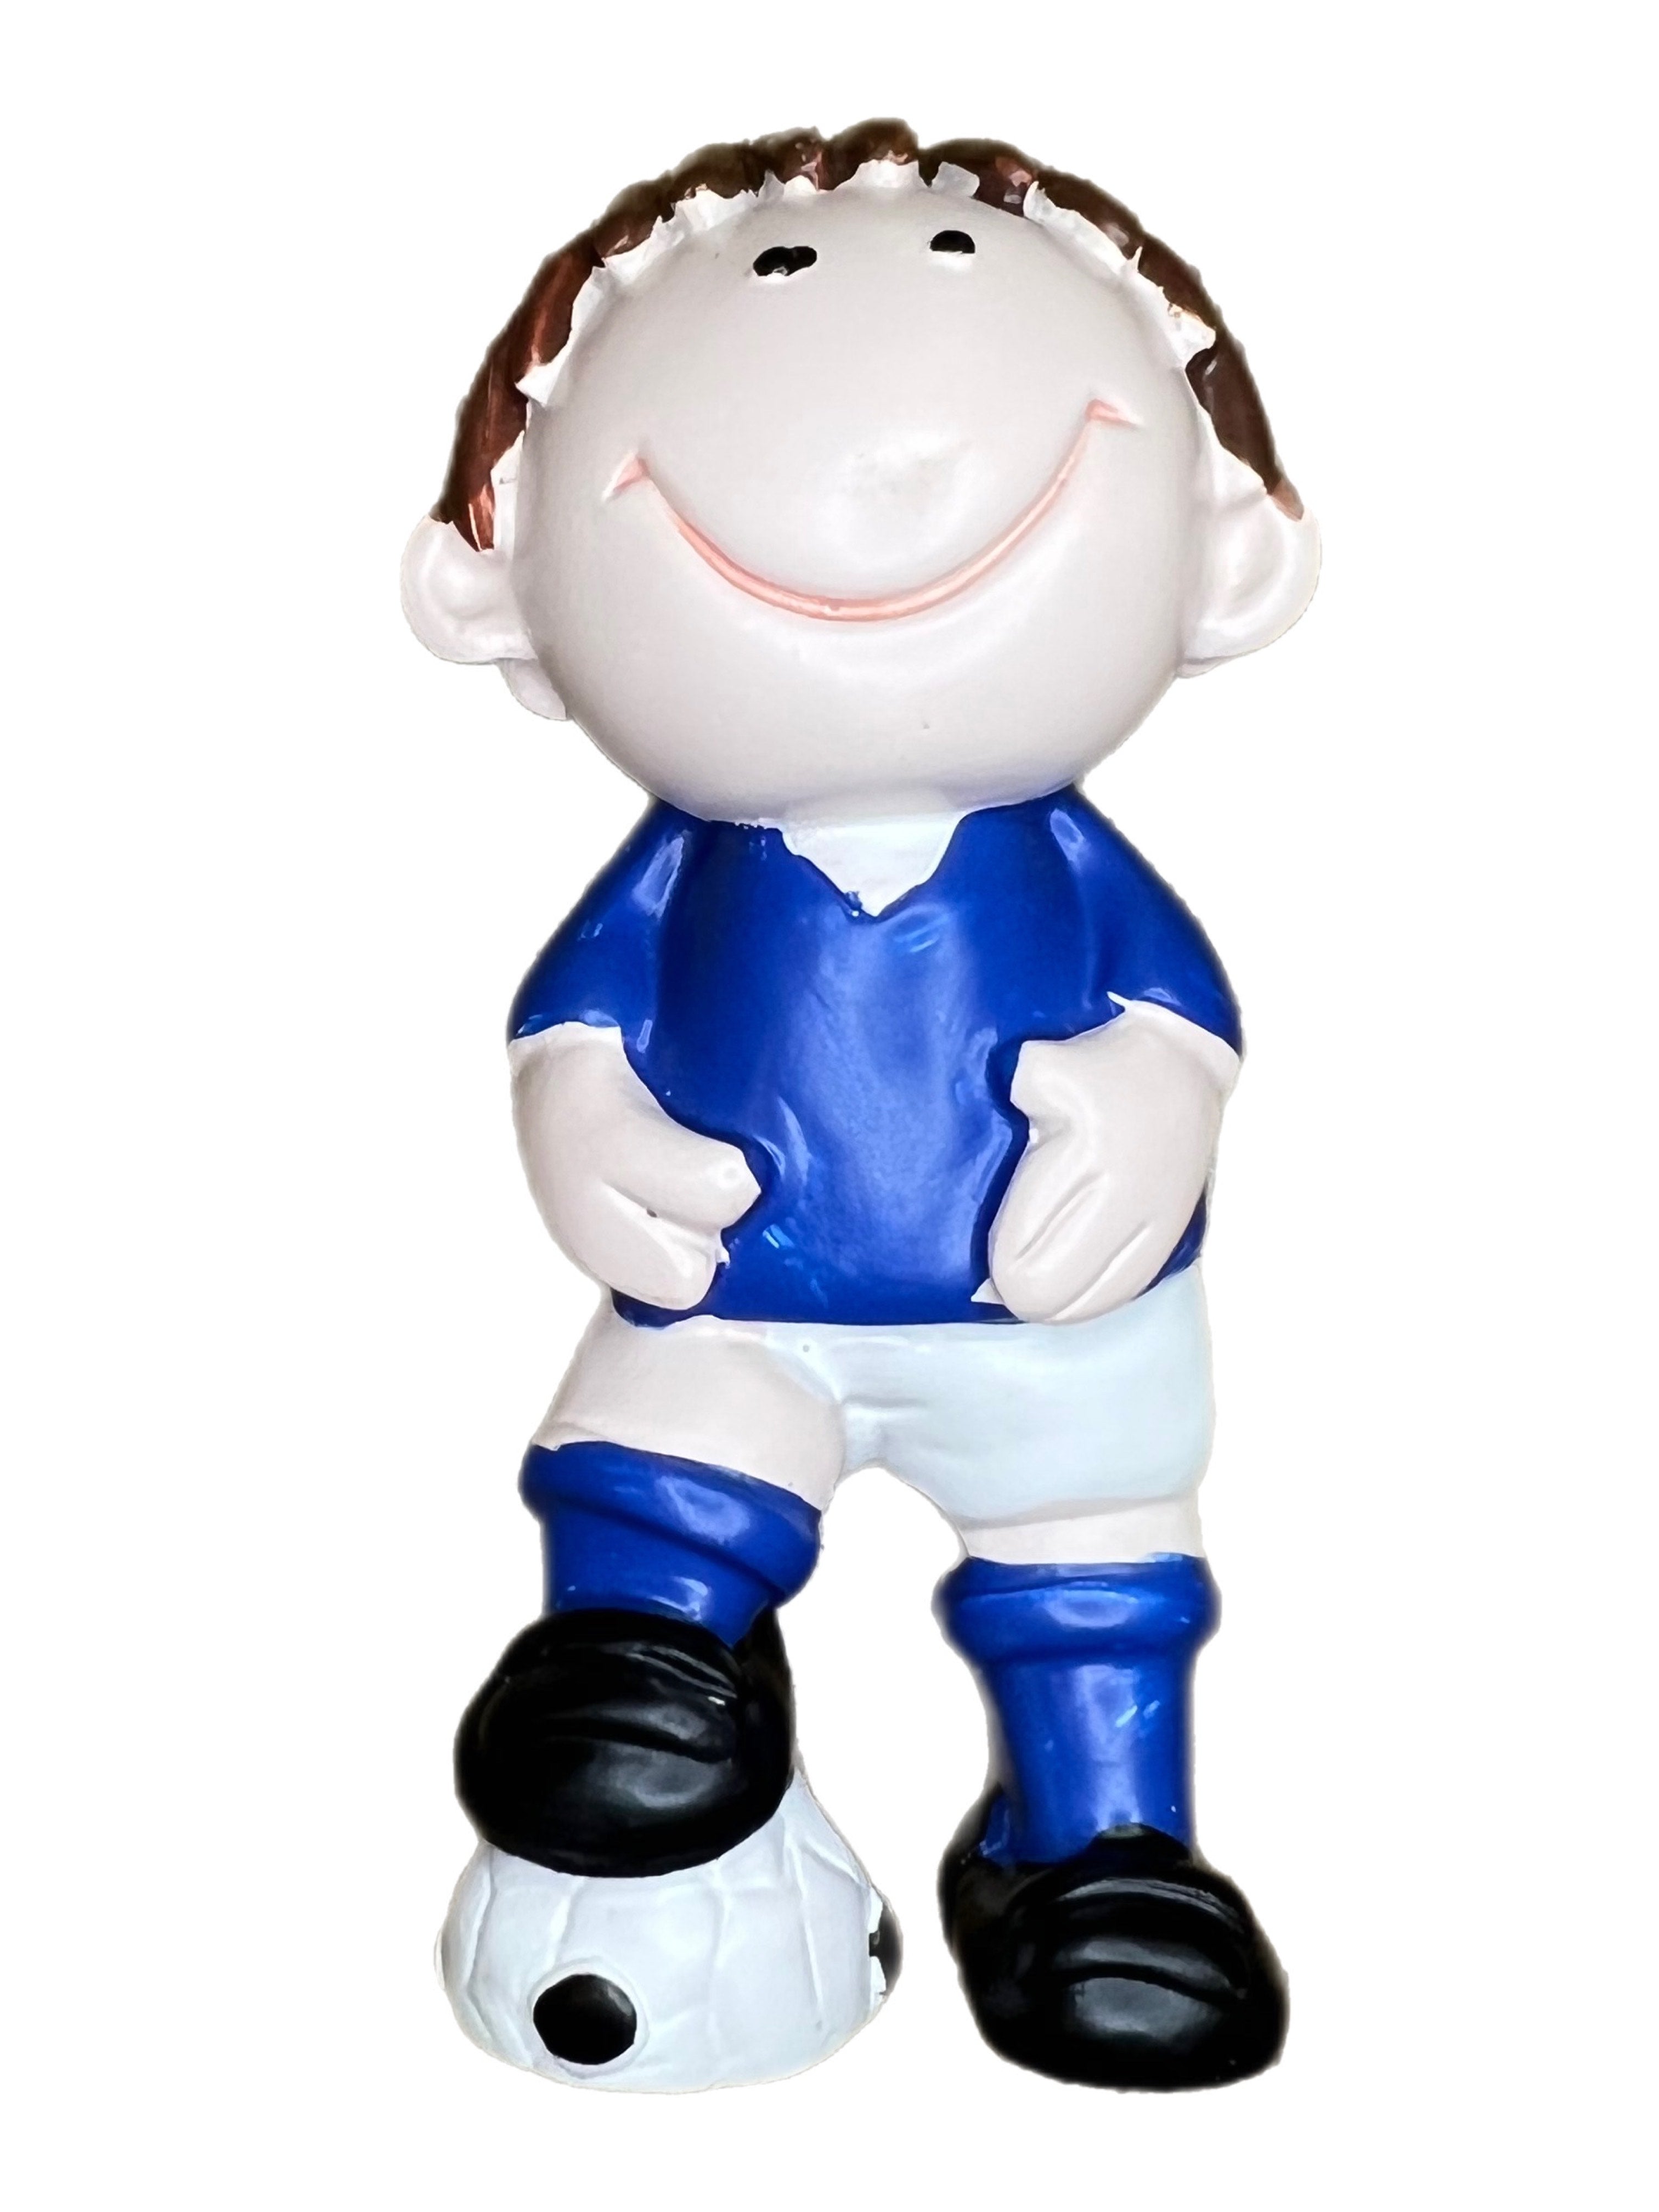 Resin Football Footballer Cake Topper Decoration - Blue Shirt